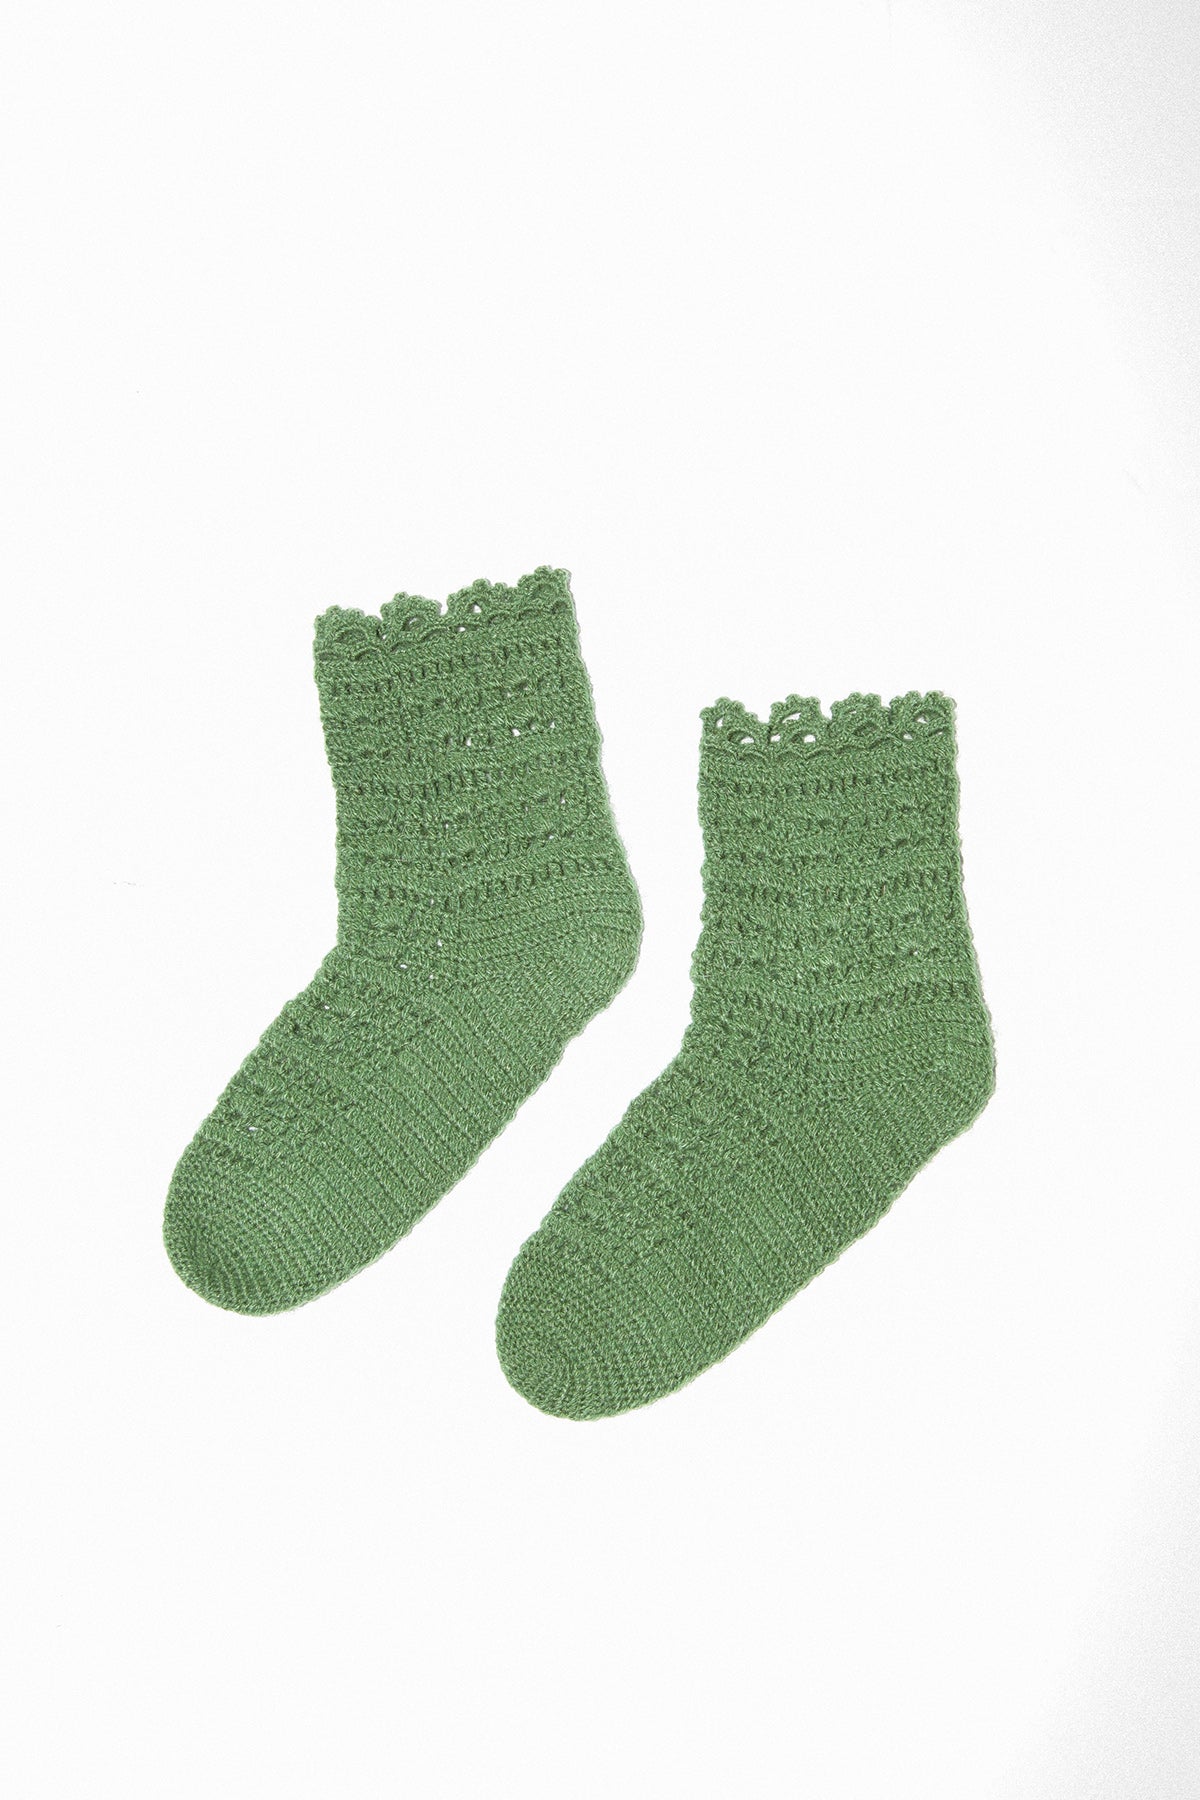 Crochet Sock in Moss